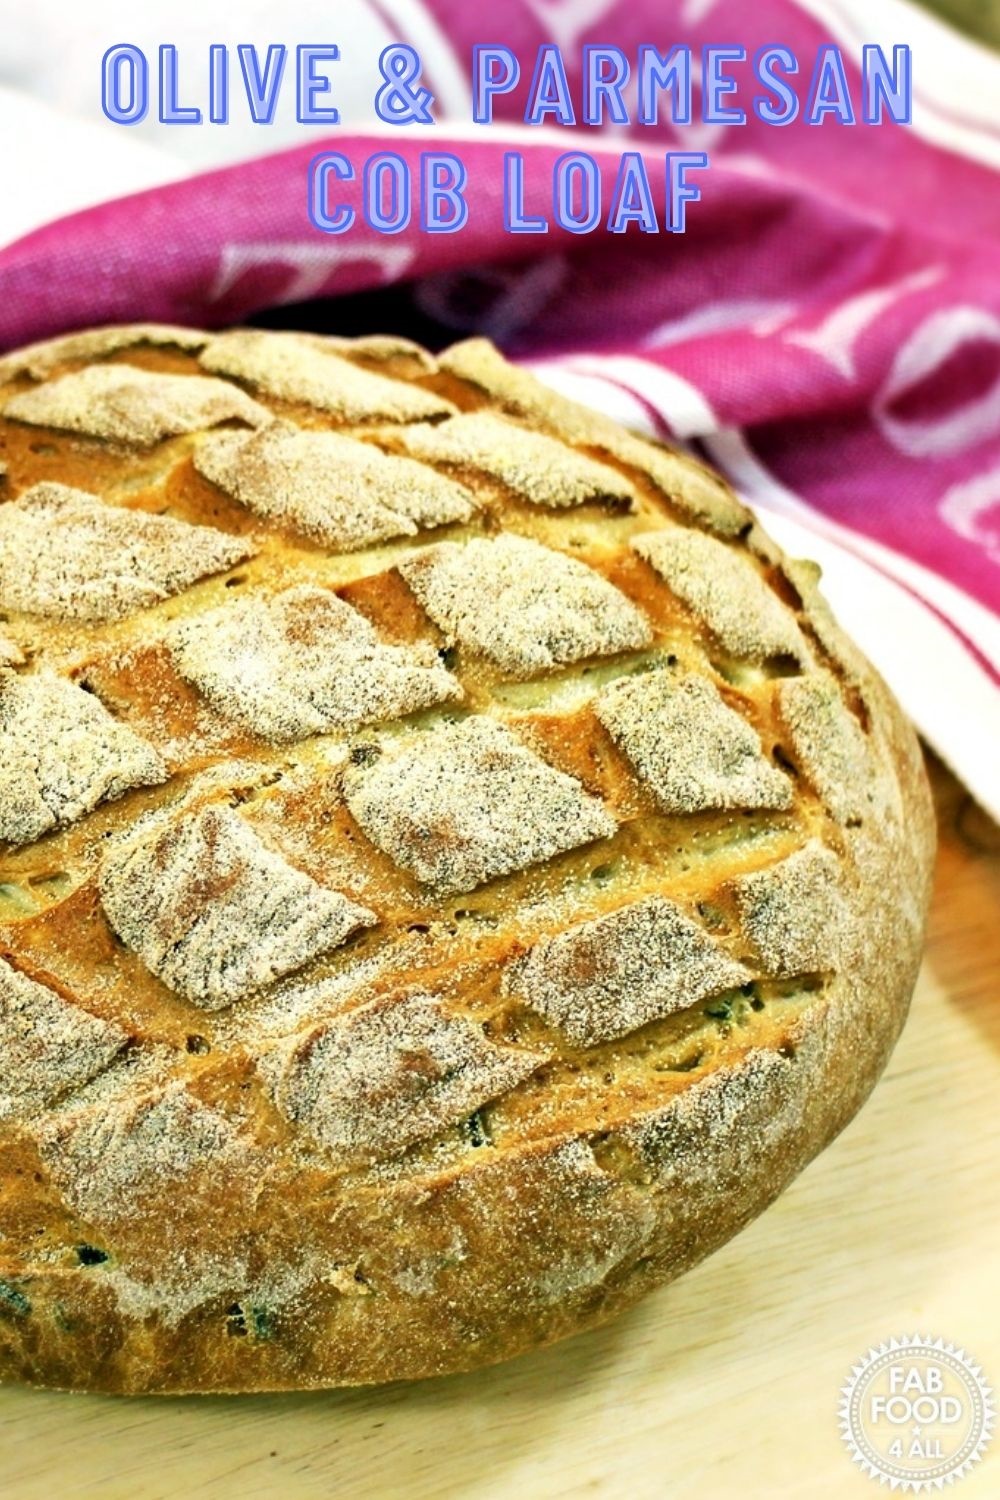 Olive & Parmesan Cob Loaf Pinterest image.